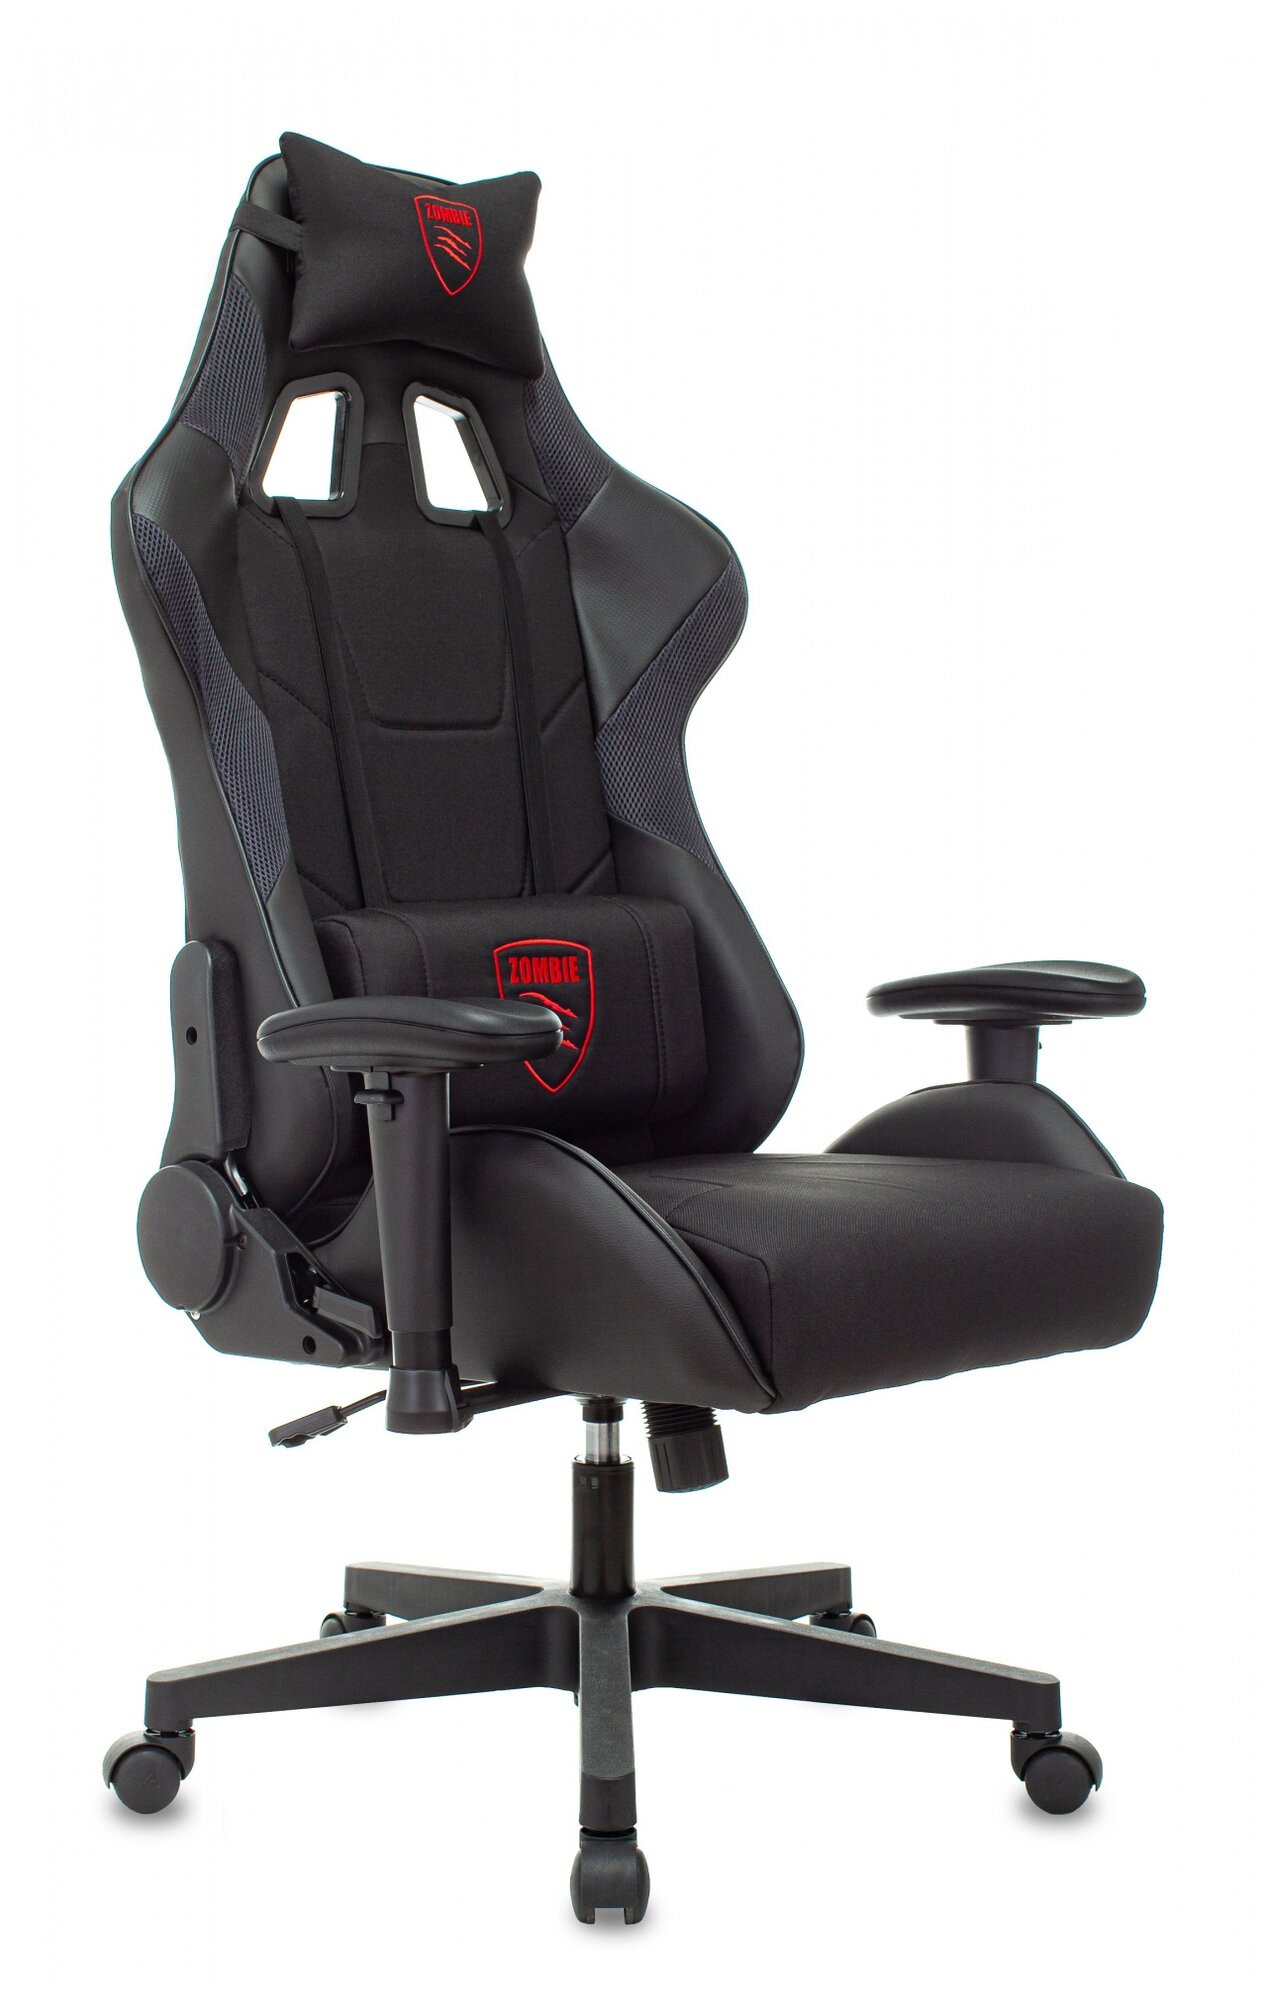 Компьютерное кресло Zombie Thunder 1 игровое, обивка: искусственная кожа/текстиль, цвет: черный-карбон